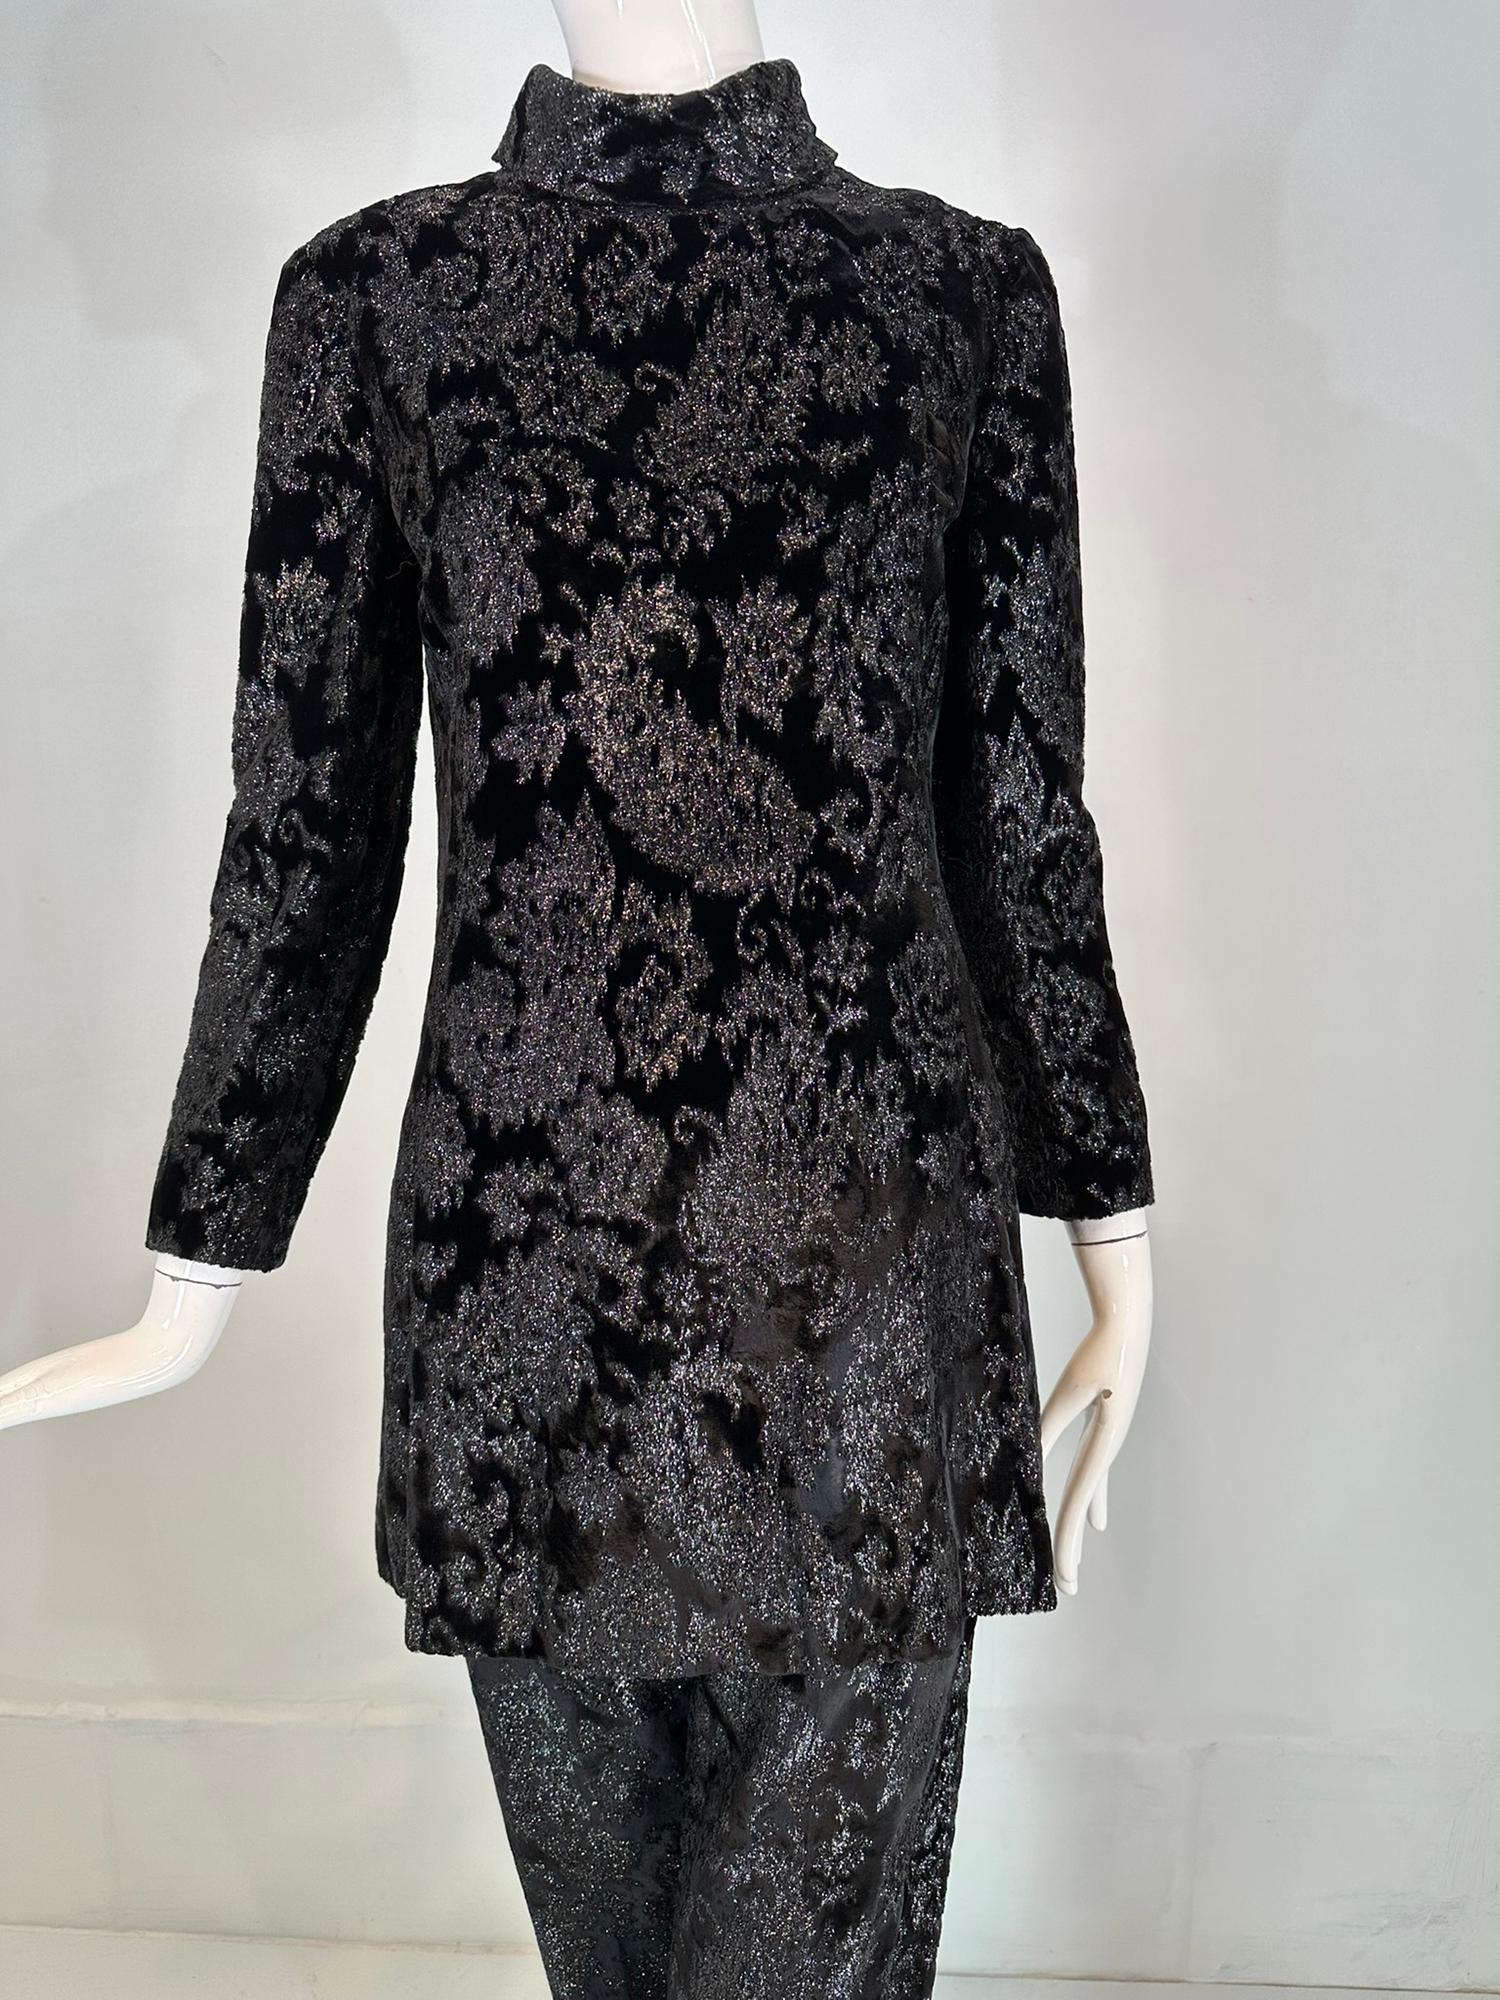 Ensemble tunique et pantalon en velours cachemire pailleté à coutures princesse de Givenchy, datant des années 1970. L'ensemble en velours noir pailleté présente une couture princesse, une tunique de forme A avec un col roulé et des manches longues.